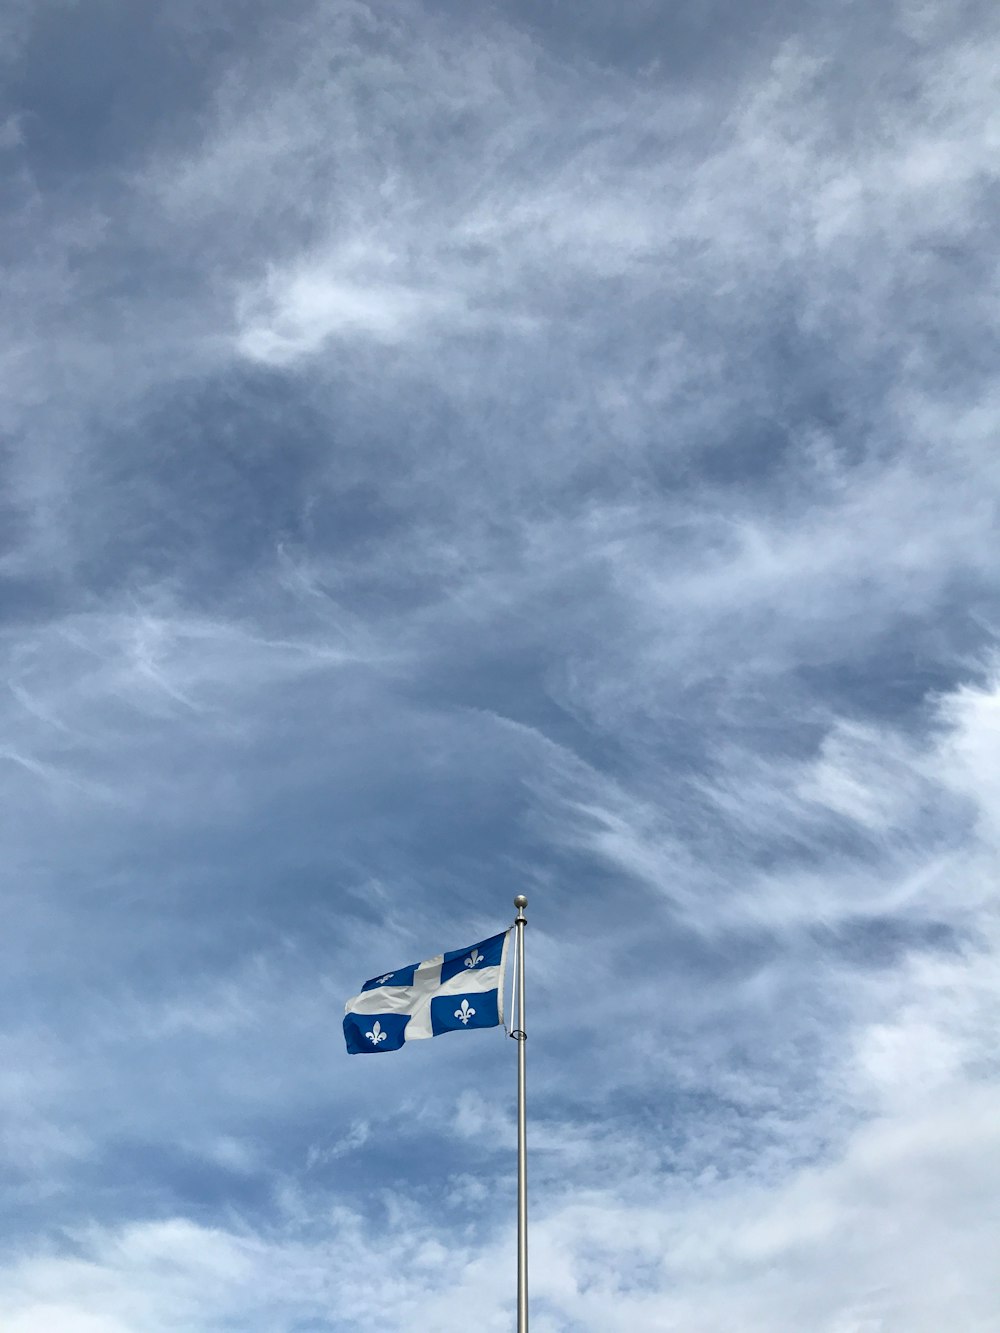 Flagge von Quebec